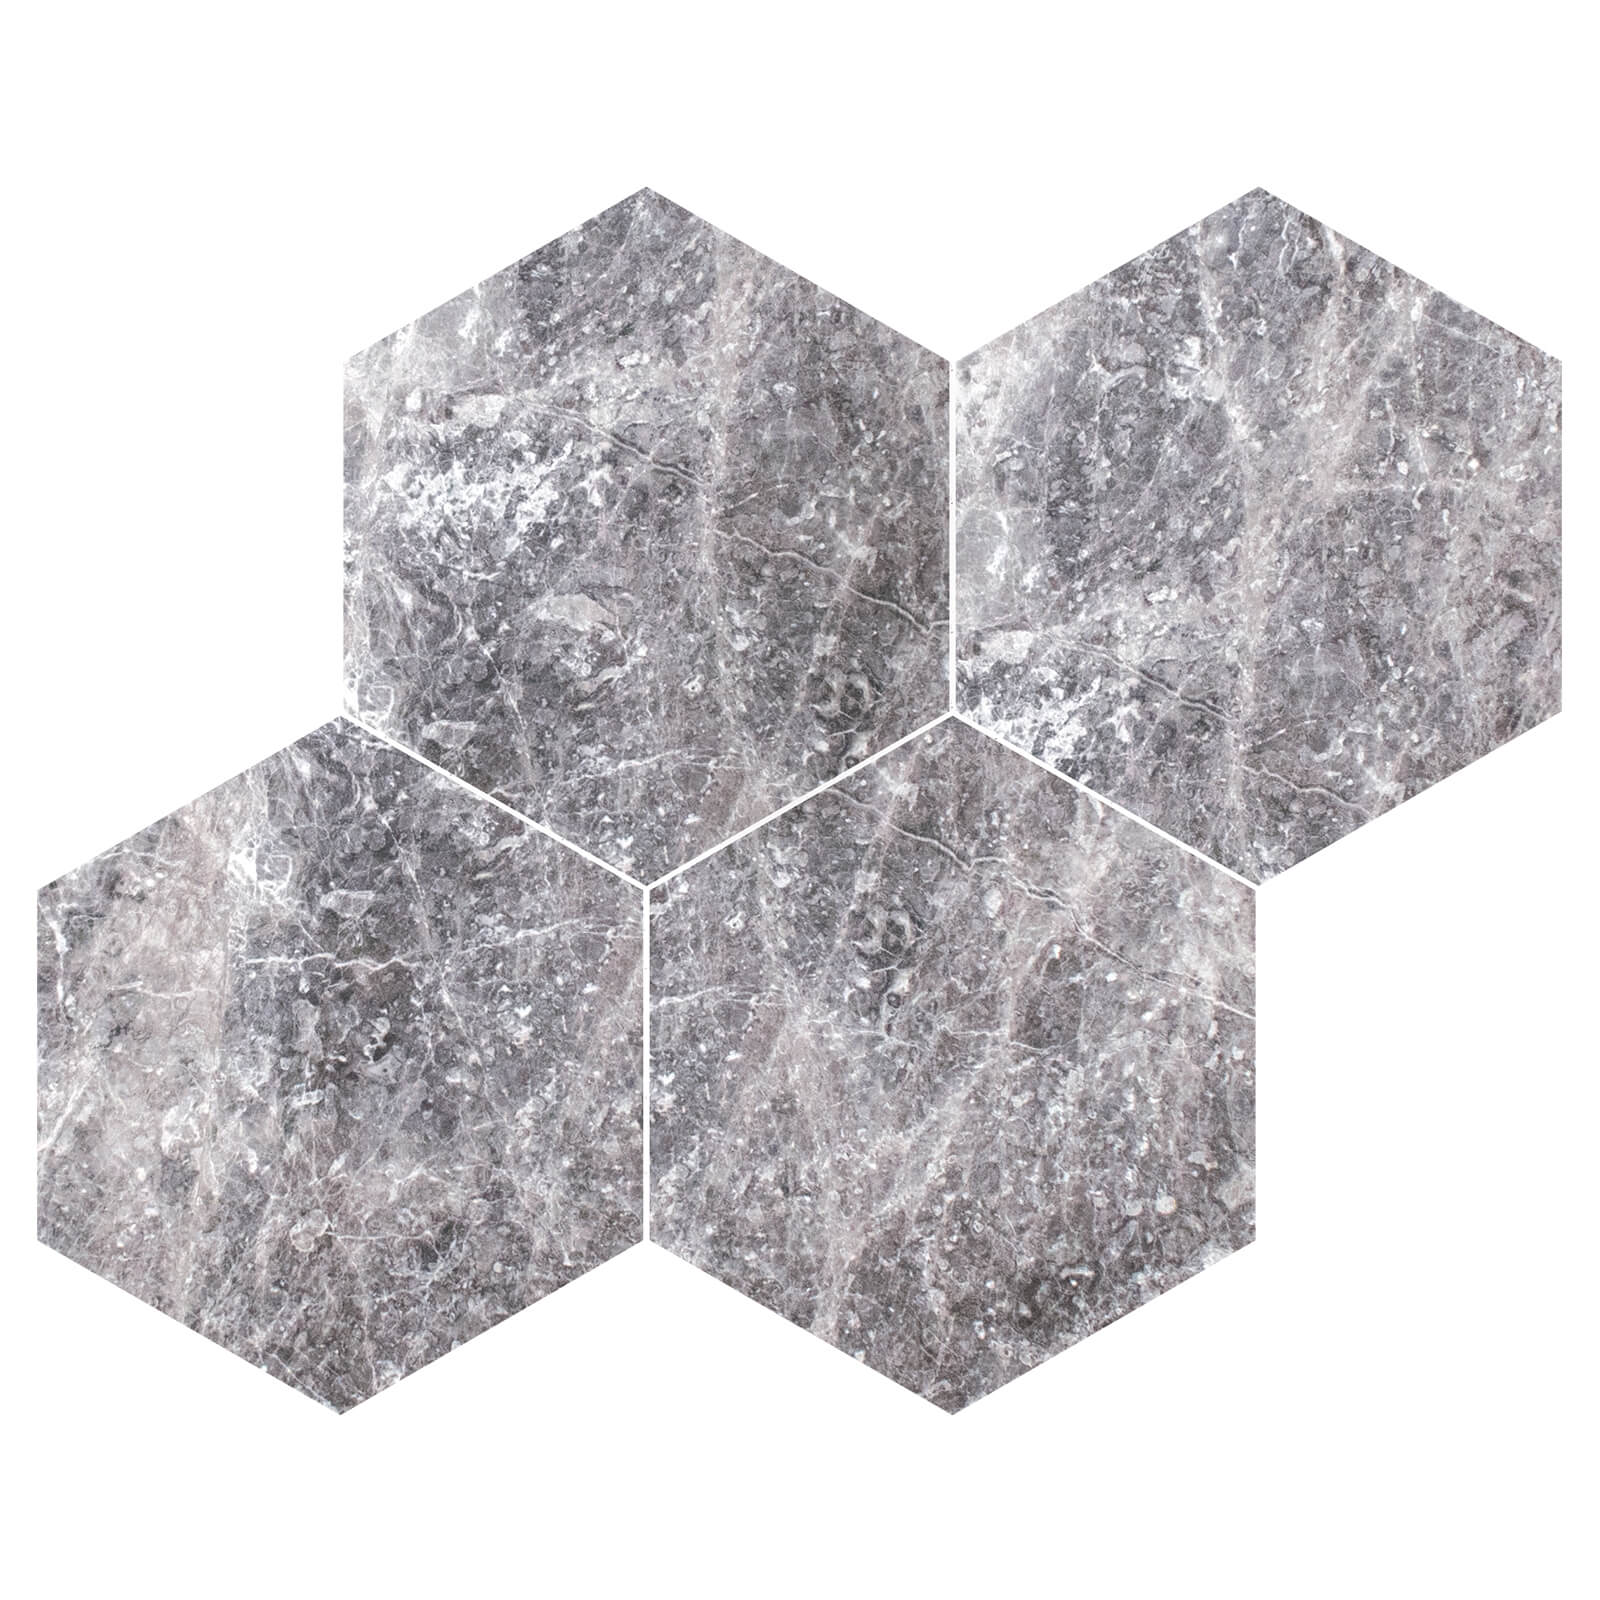 Tundra Grey Regular Hexagon - 0